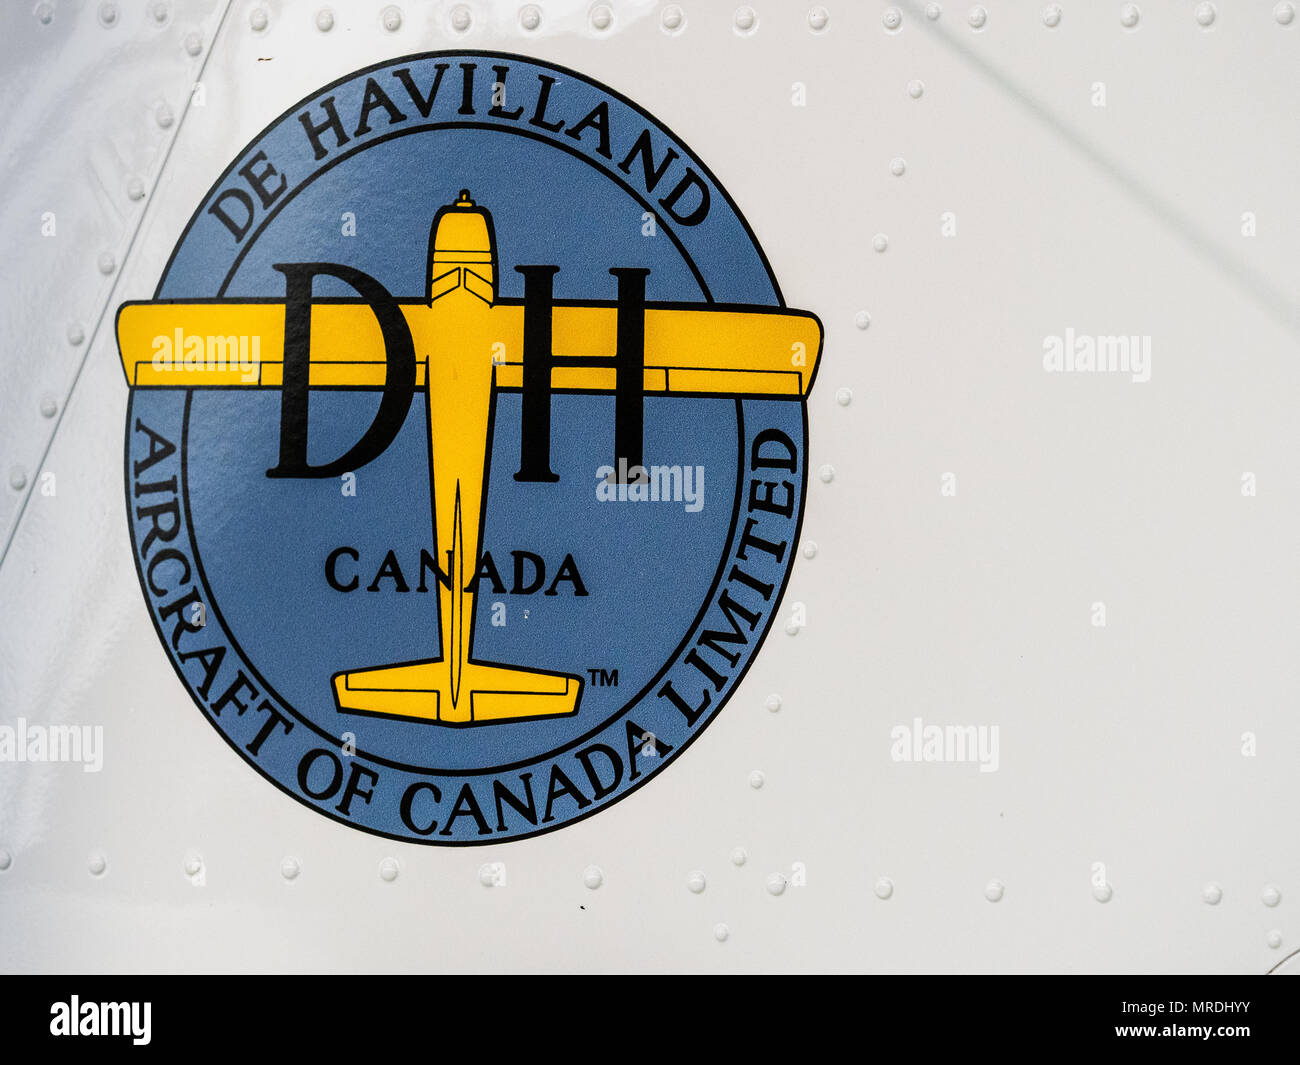 De Havilland Canada logo on a vintage aircraft Stock Photo